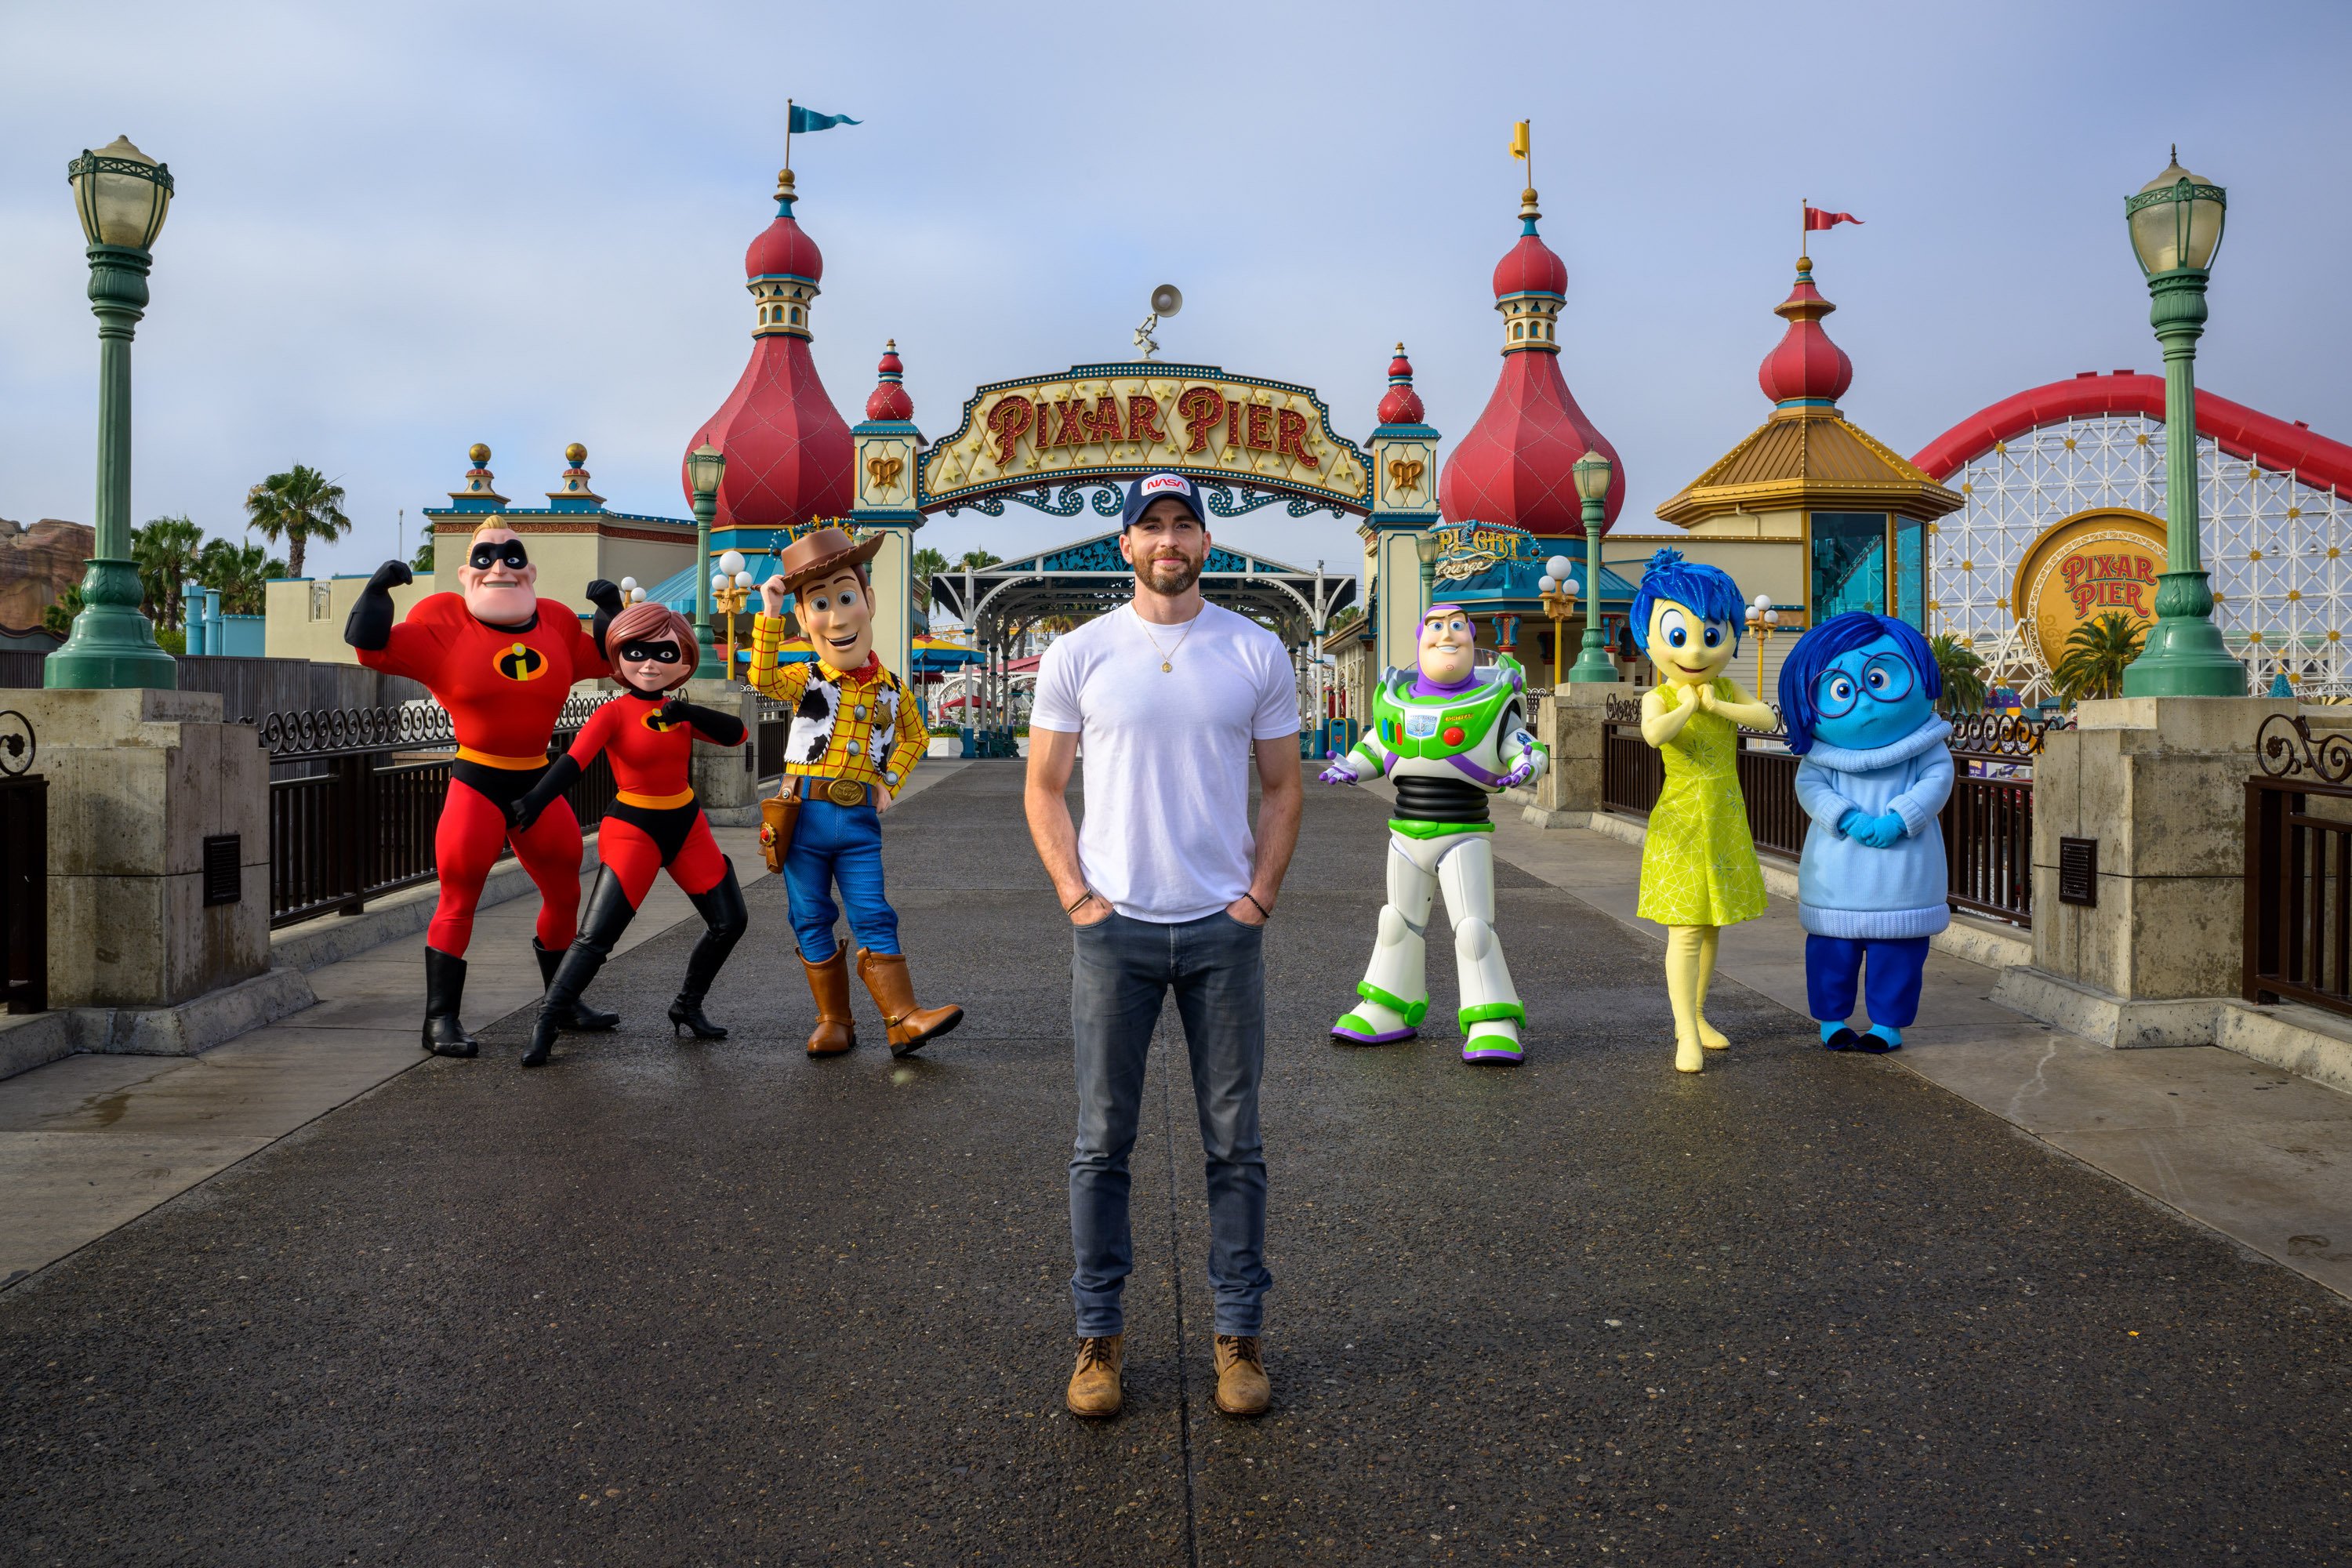 Chris Evans poses with Pixar characters at Disneyland California.